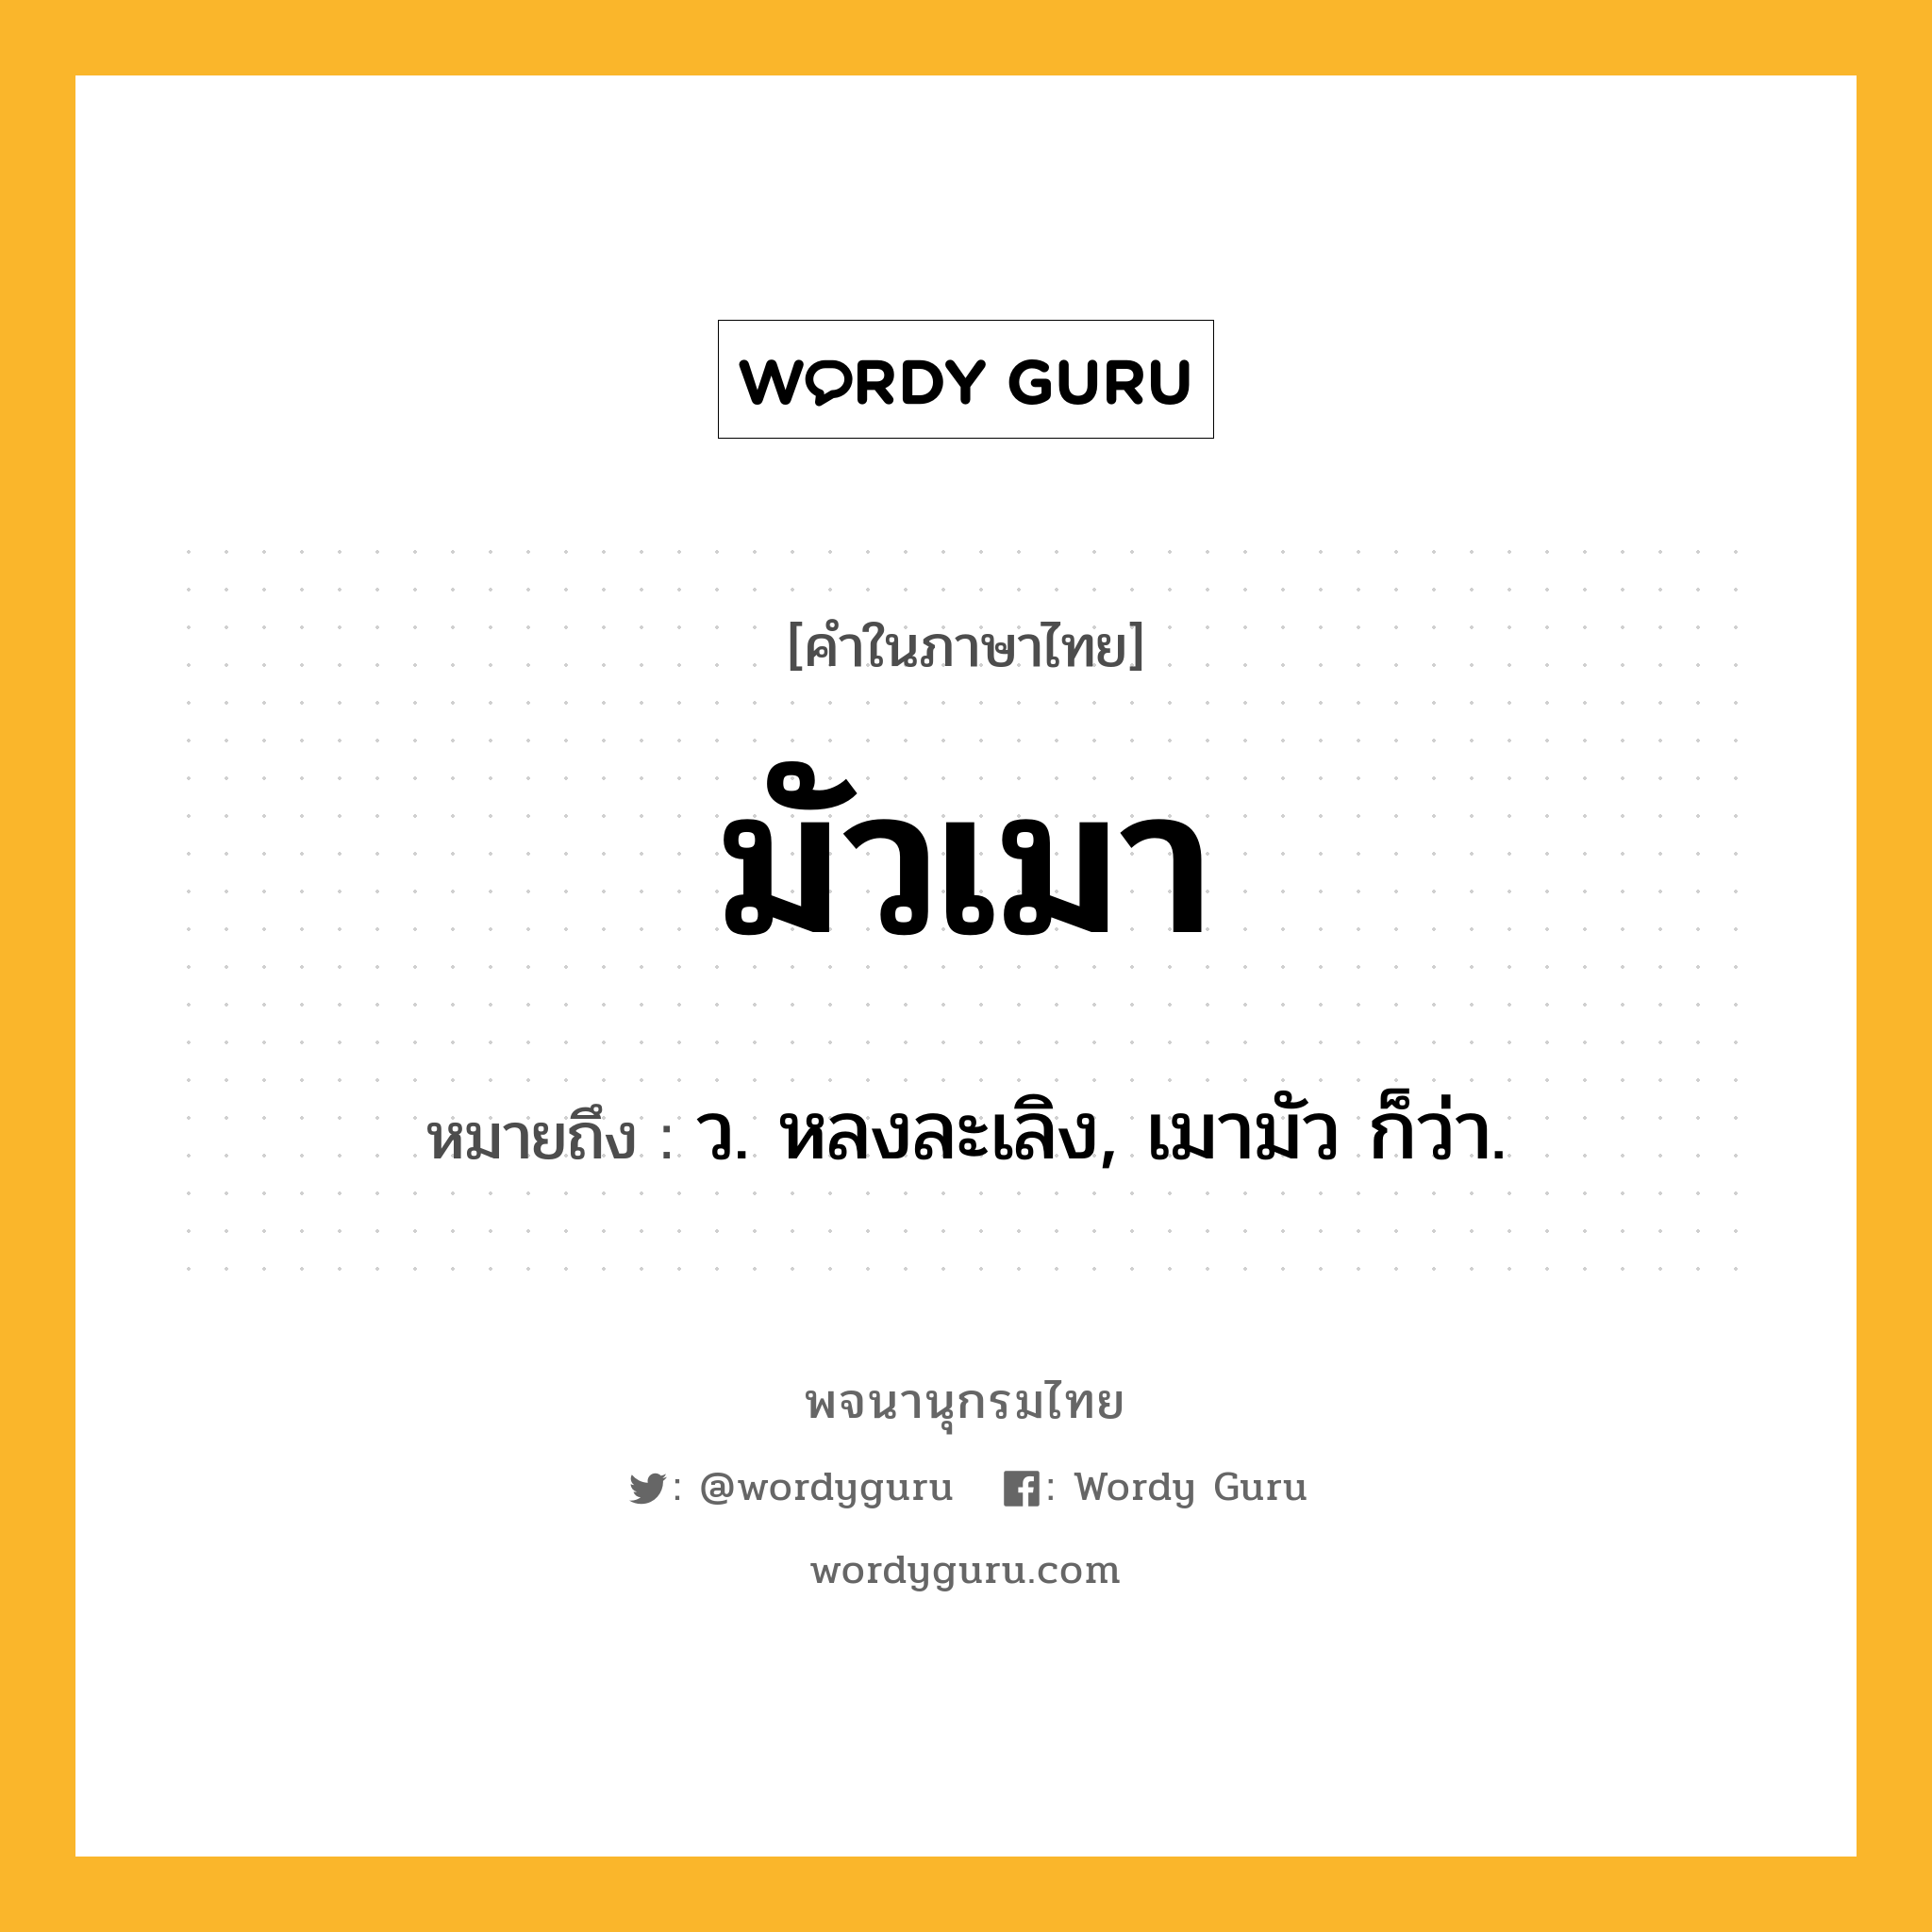 มัวเมา หมายถึงอะไร?, คำในภาษาไทย มัวเมา หมายถึง ว. หลงละเลิง, เมามัว ก็ว่า.